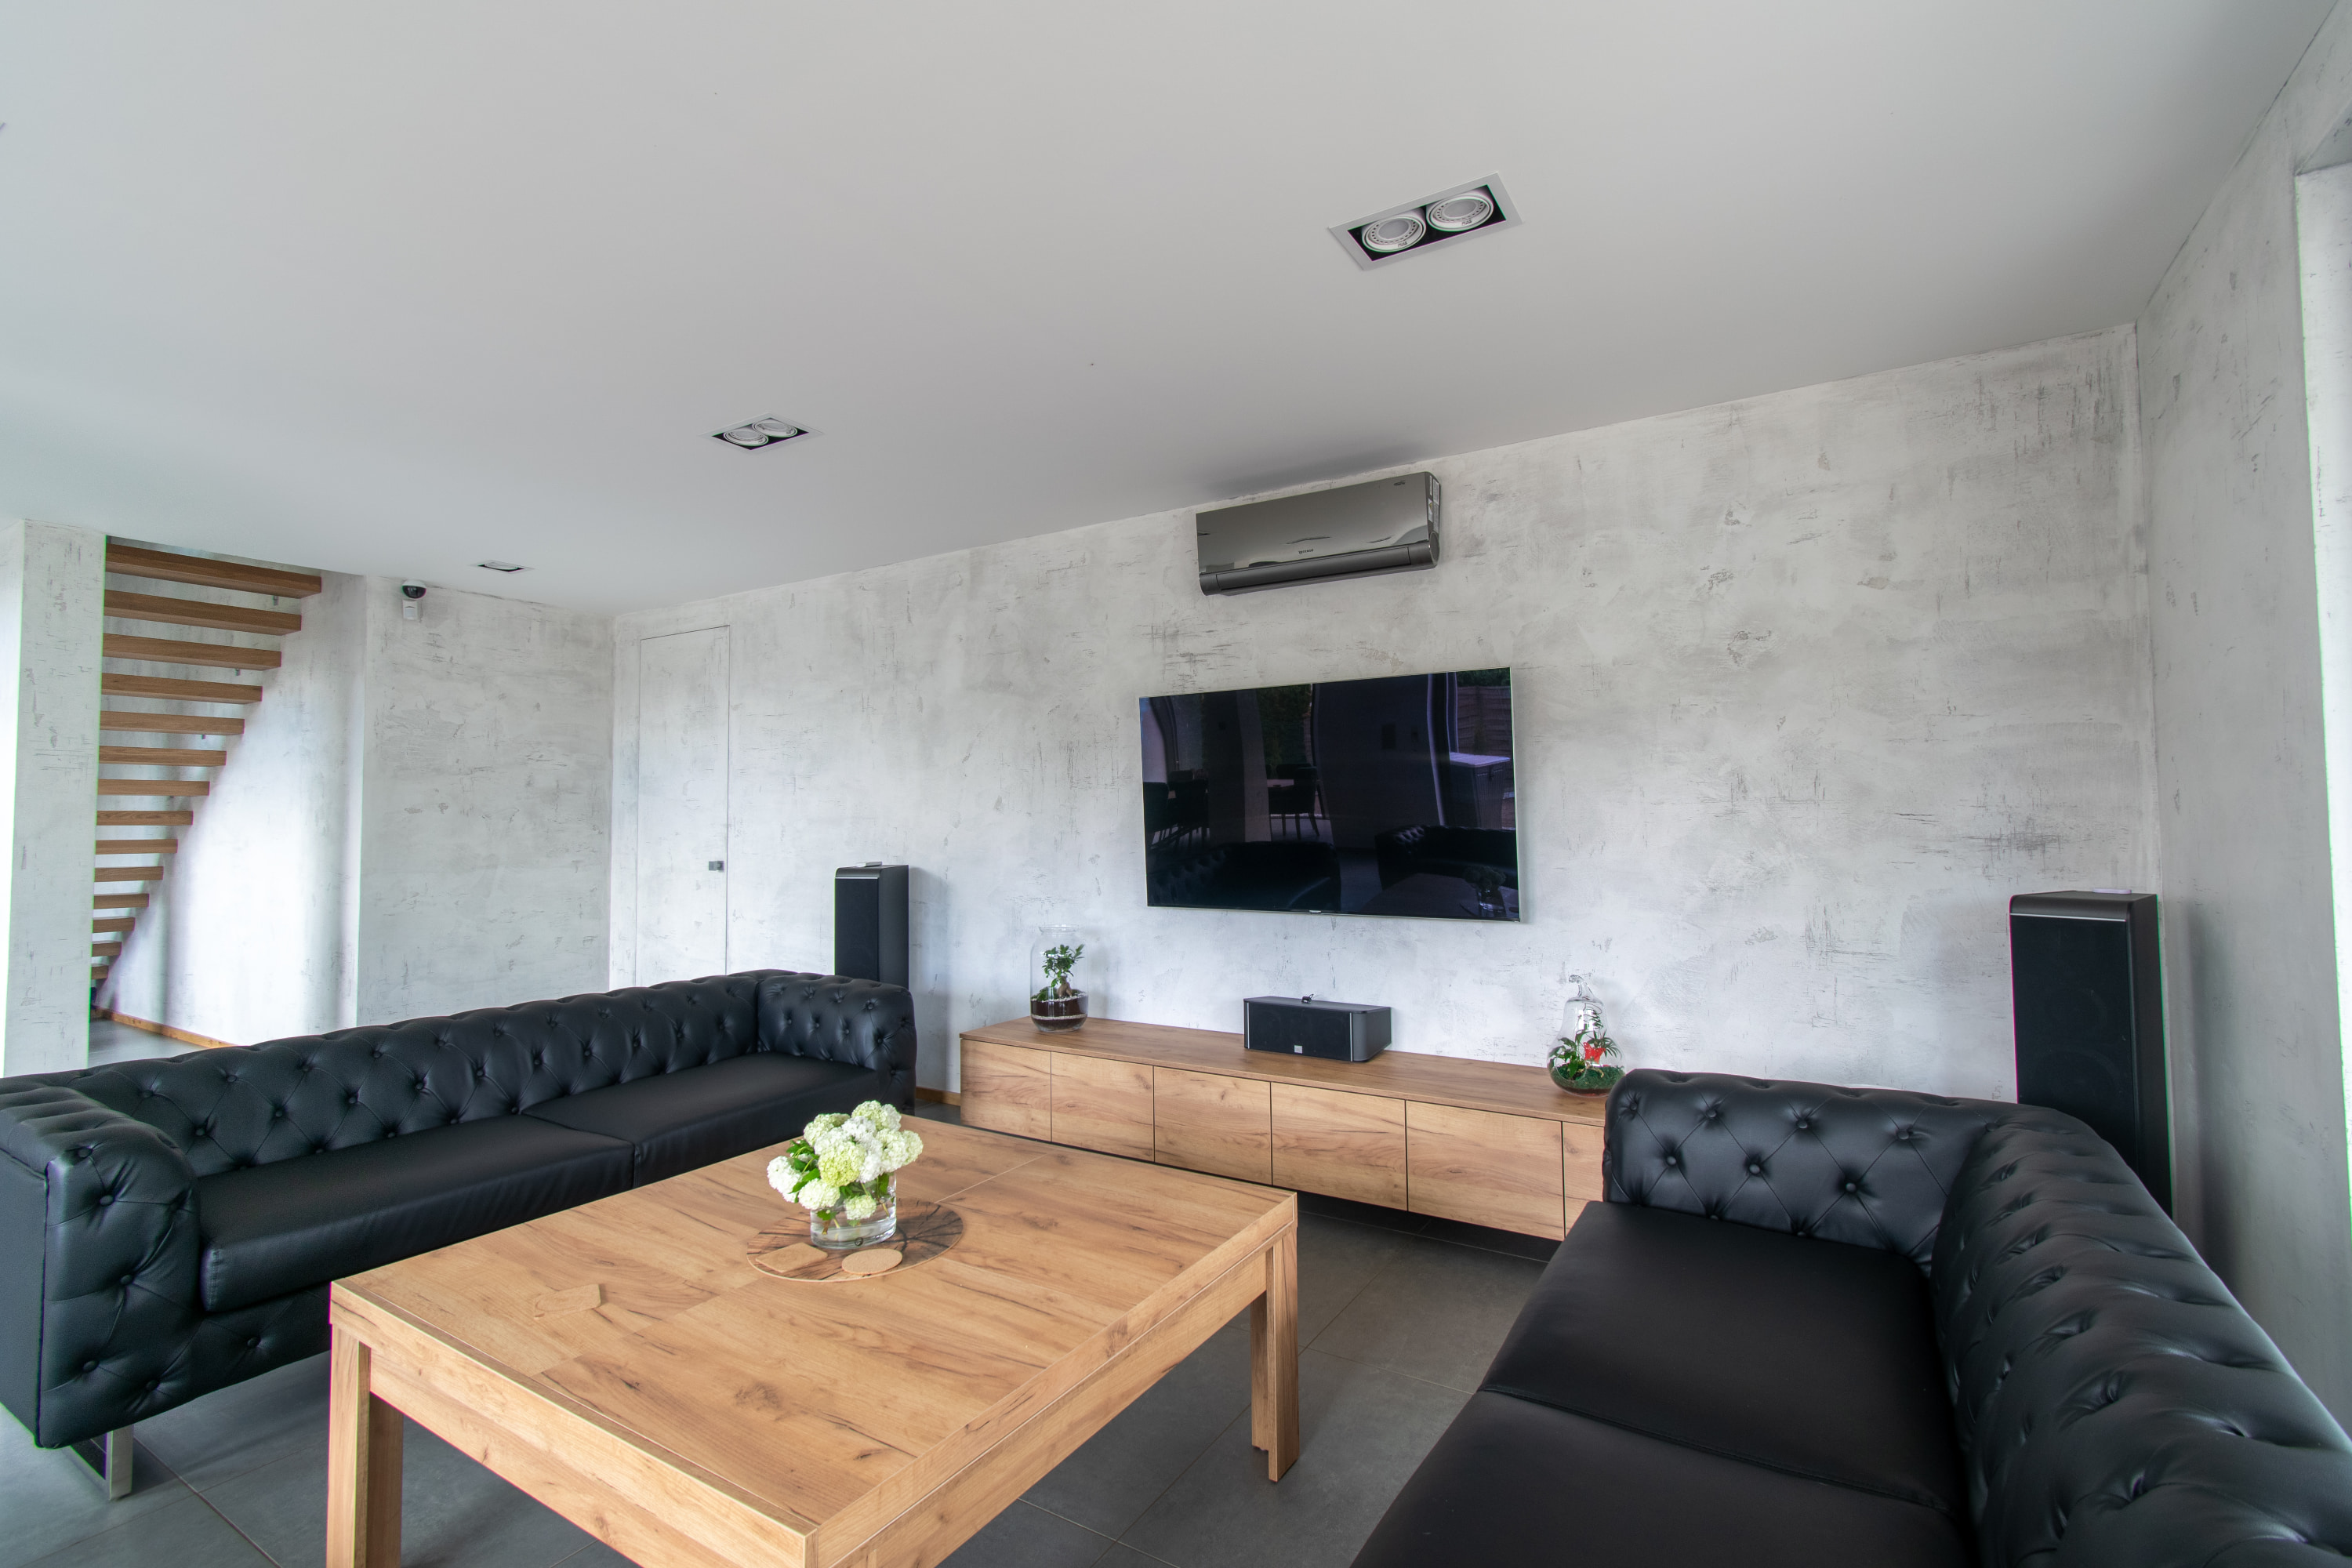 Salon z drapanym tynkiem Archi+Concrete na ścianach. Ukryte biuro w tle.